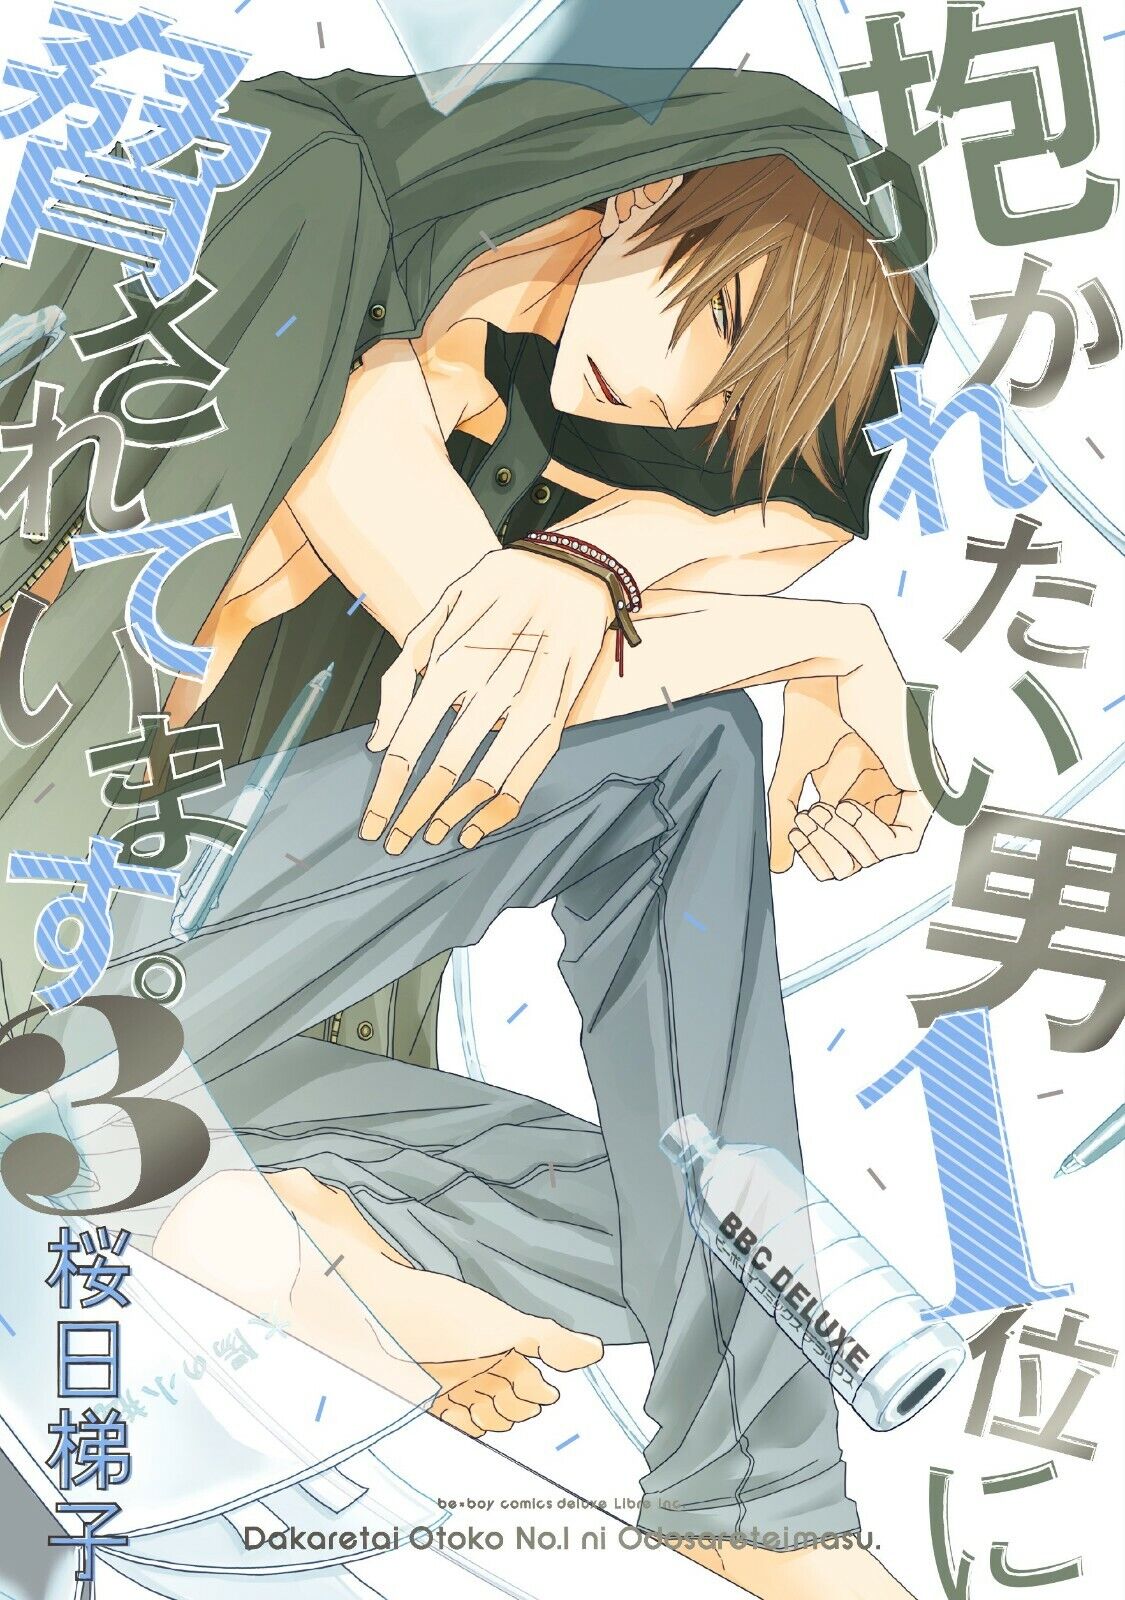 Dakaretai Otoko 1-i ni Odosarete Imasu #3 | JAPAN BL Comic Manga Yaoi Dakaichi